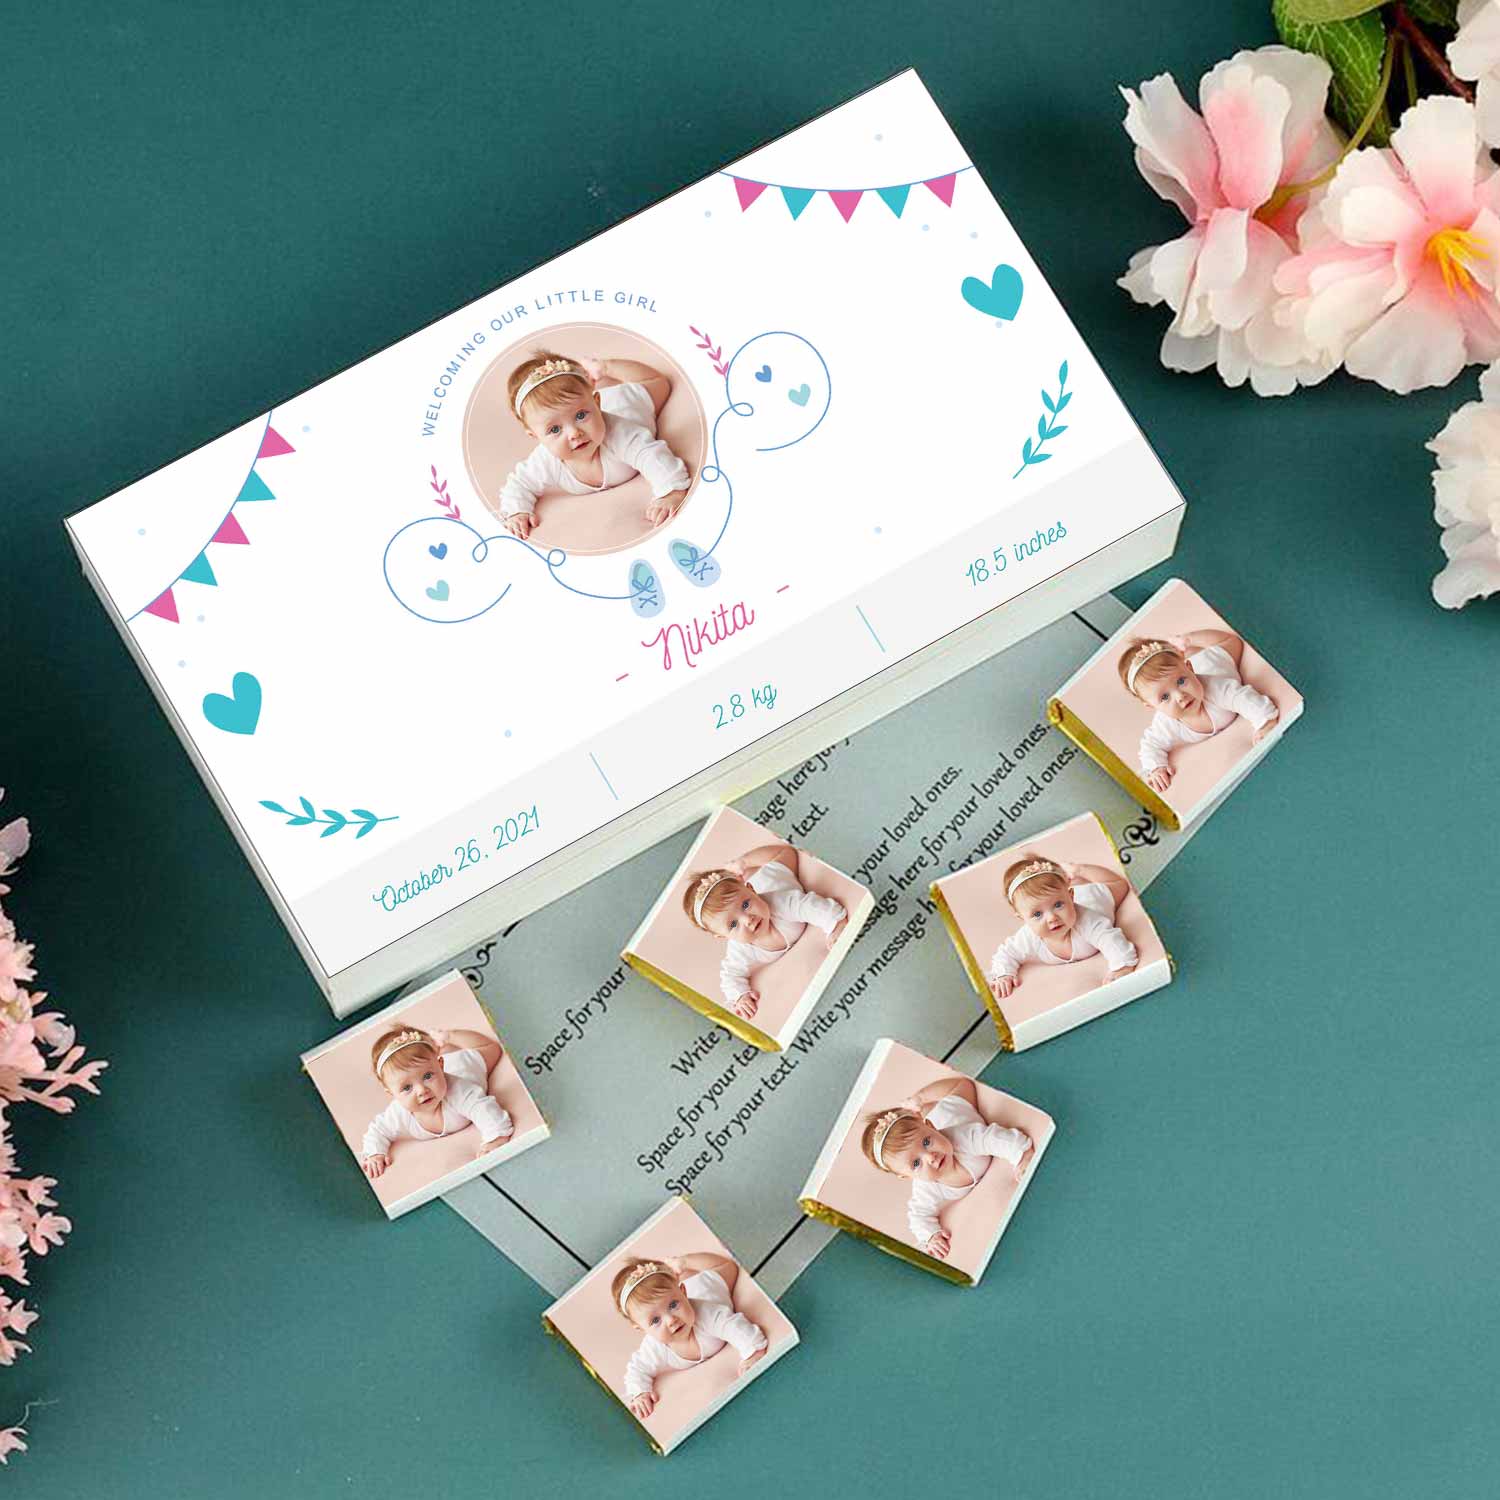 White elegant designed personalised baby announcement PERSONALISED BABY ANNOUNCEMENT WITH WHITE ELEGANT DESIGNED BOX OF CHOCOLATES 